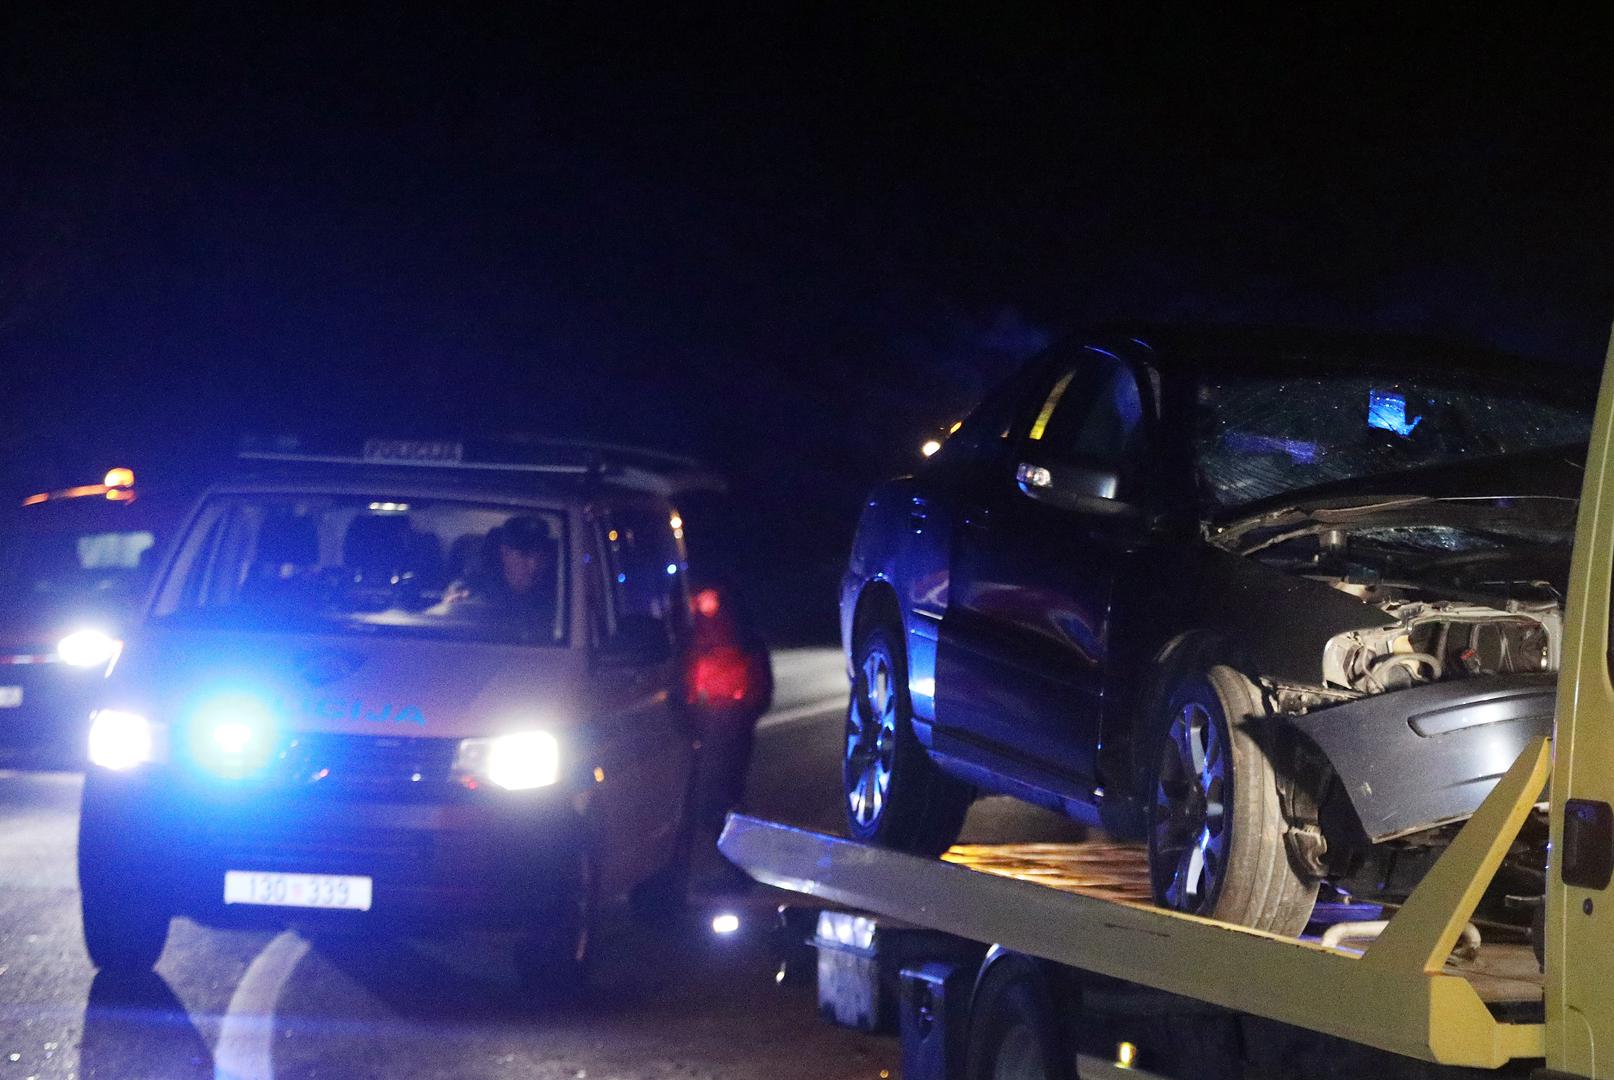 04.04.2021.,Boraja - Na cesti D-58 prometna nesreca u kojoj je u sudaru dva osobna automobila tesko ozlijdjeno vise osoba koje su prebacene u sibensku bolnicu.
Photo: Dusko Jaramaz/PIXSELL